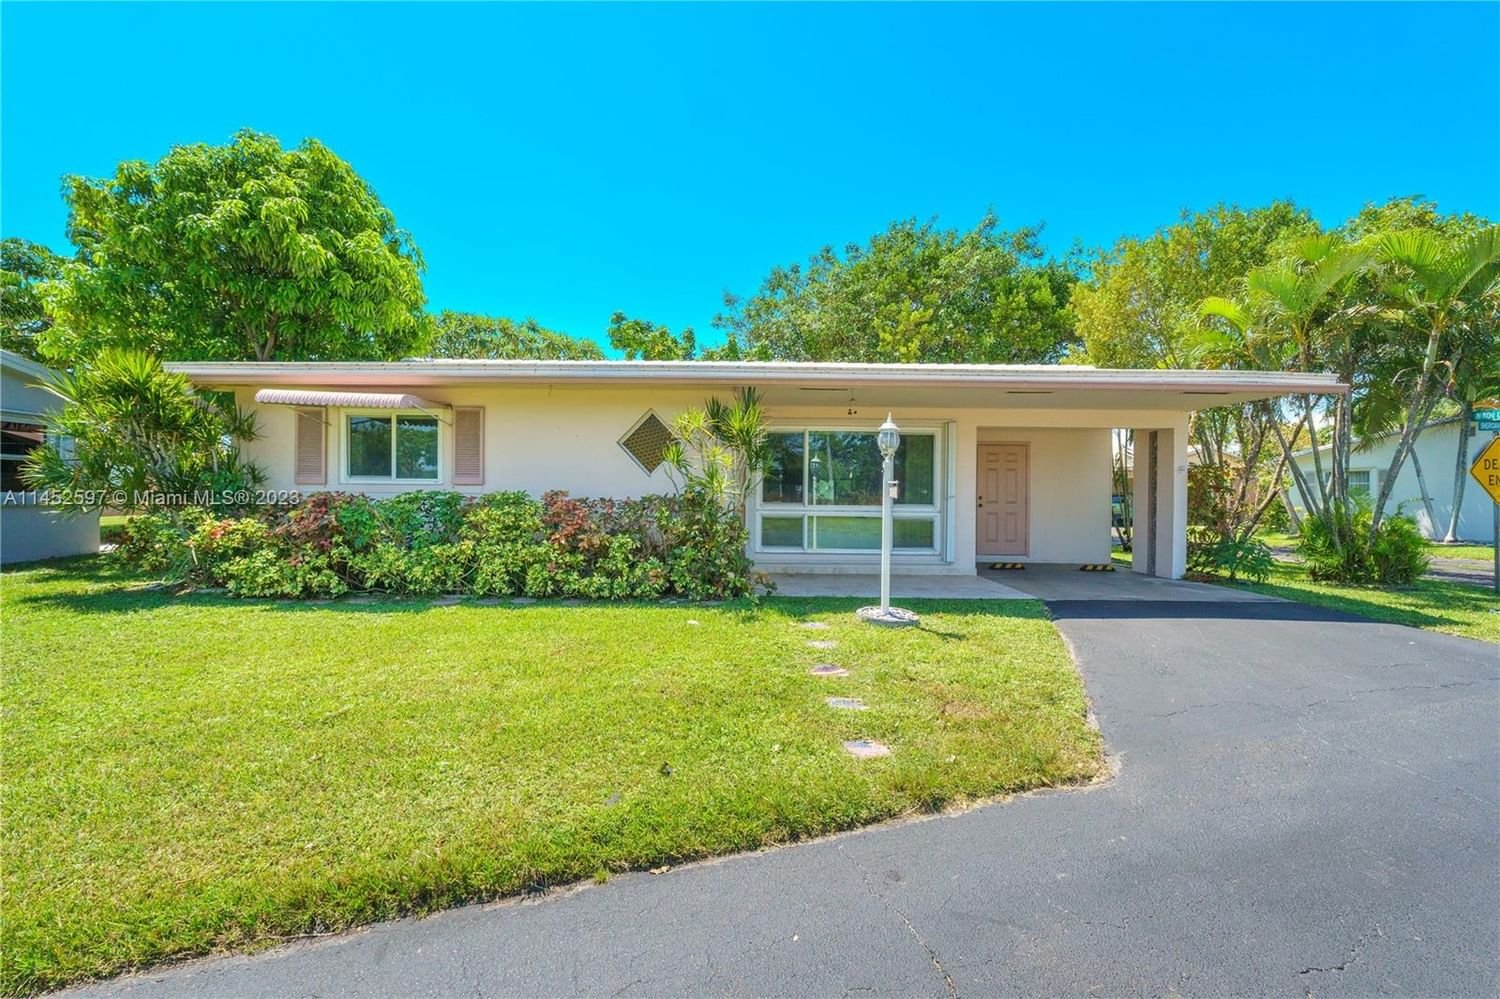 Real estate property located at 3198 Sheridan Ln #135, Broward County, SHERIDAN LAKES CONDO HOUS, Hollywood, FL